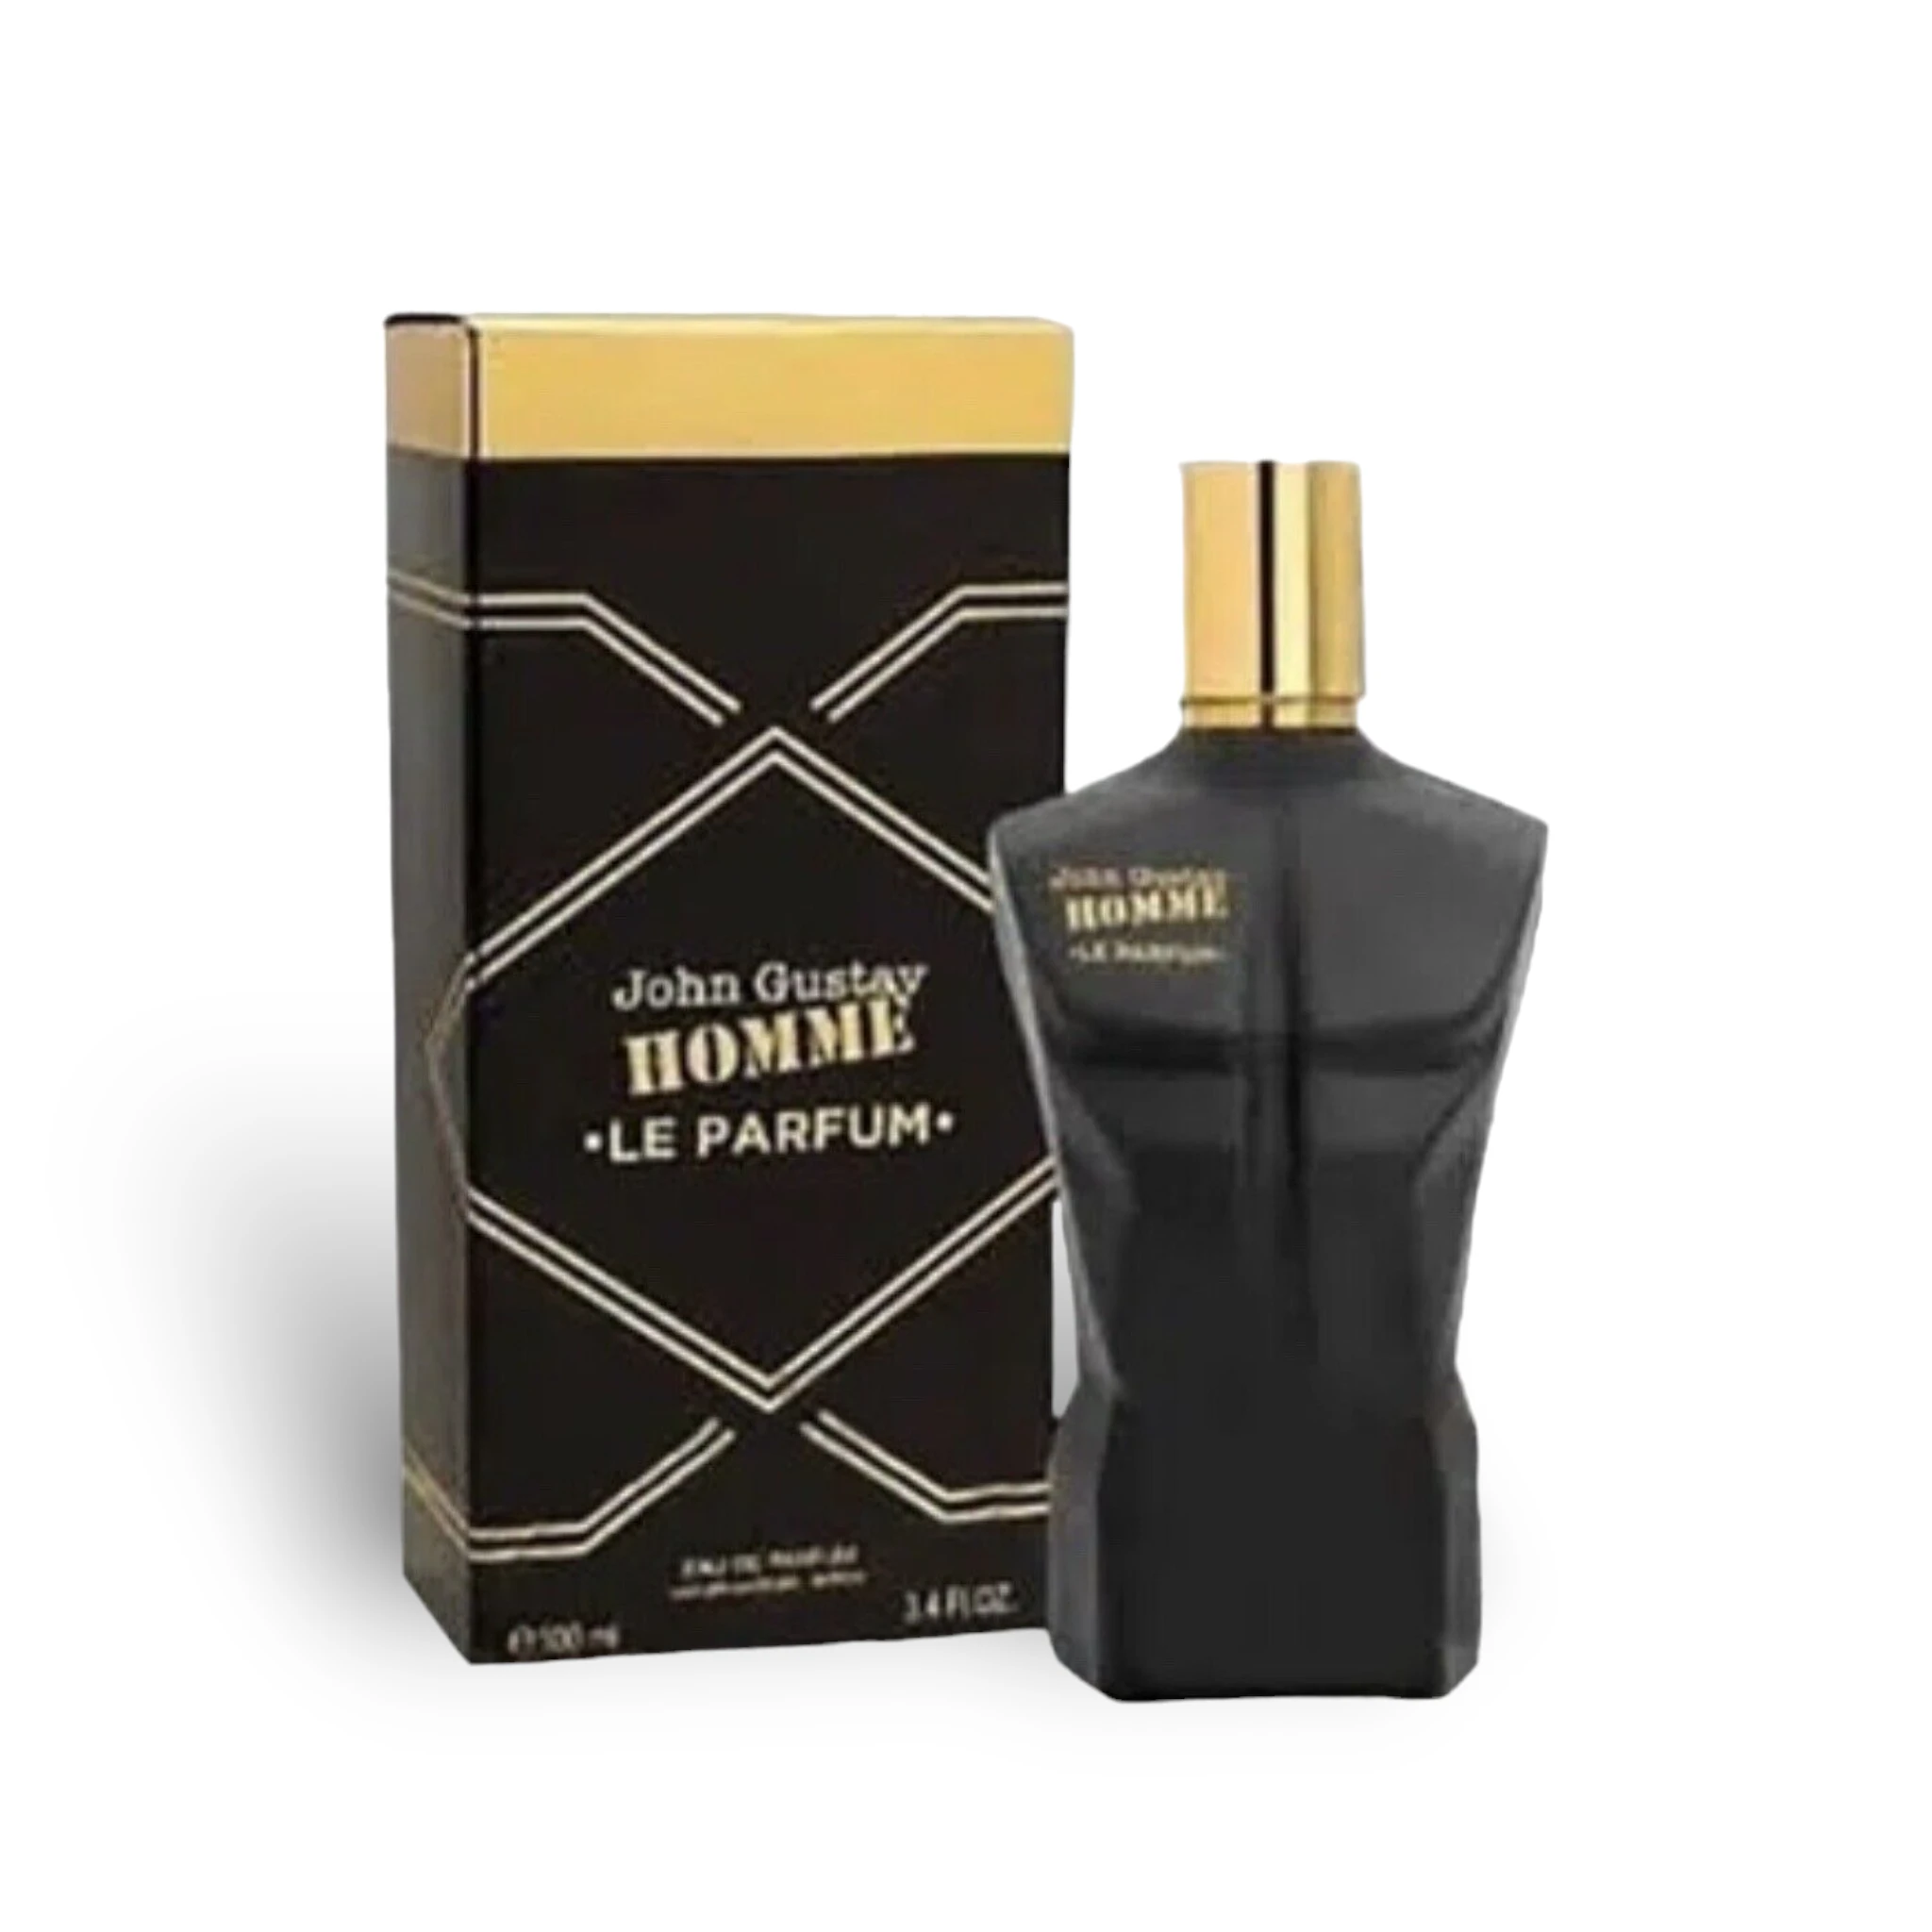 John Gustav Homme Le Parfum 100Ml Edp By Fragrance World